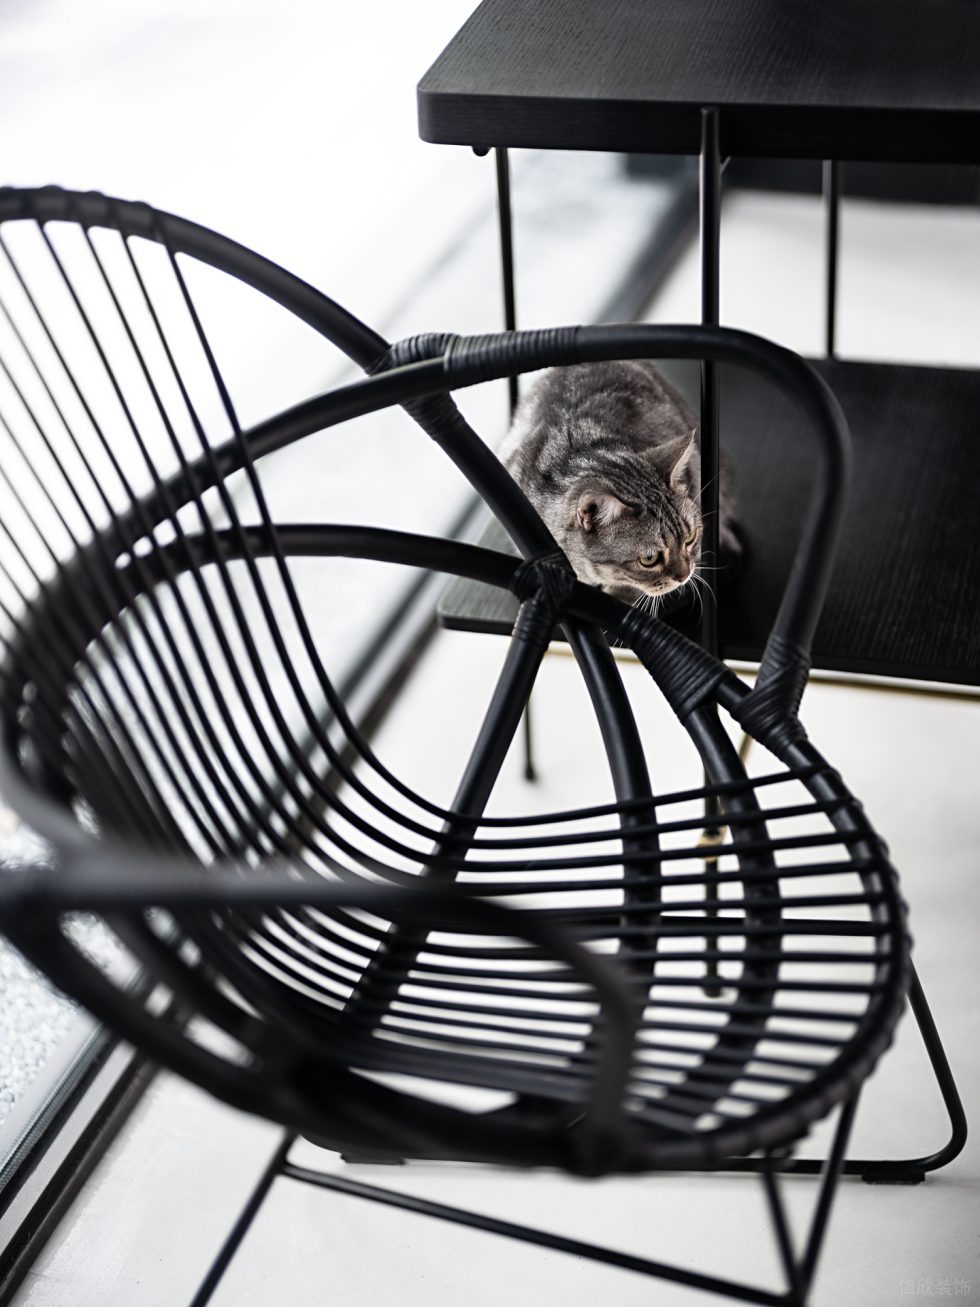 自然空间环境研究所展厅装修方案 铁架造型桌椅及猫咪